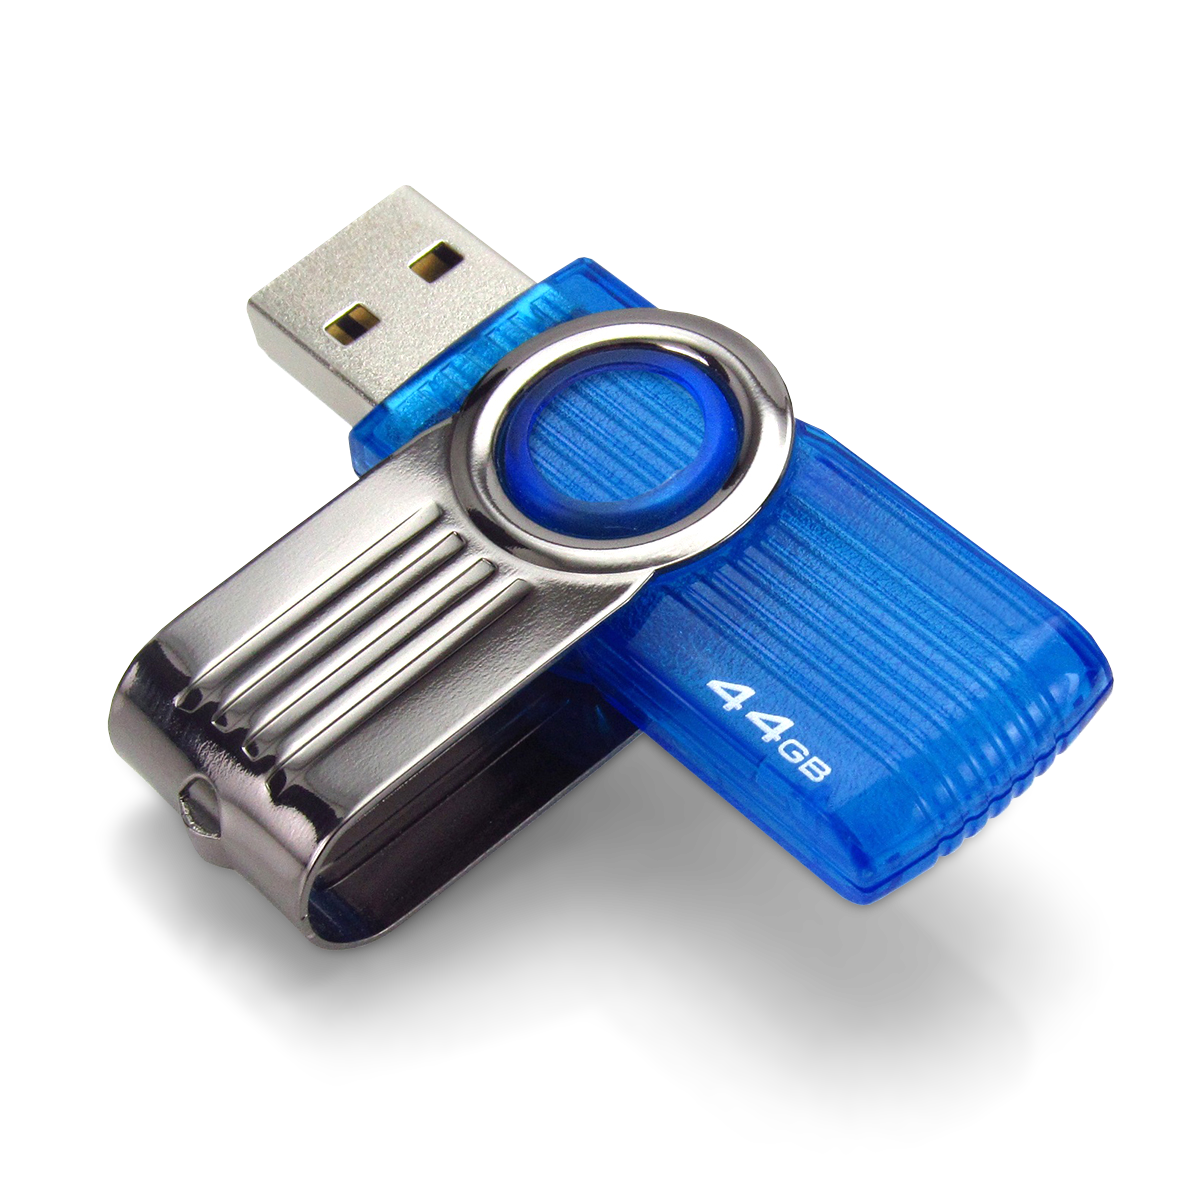 Speicherstick (USB 3.0)